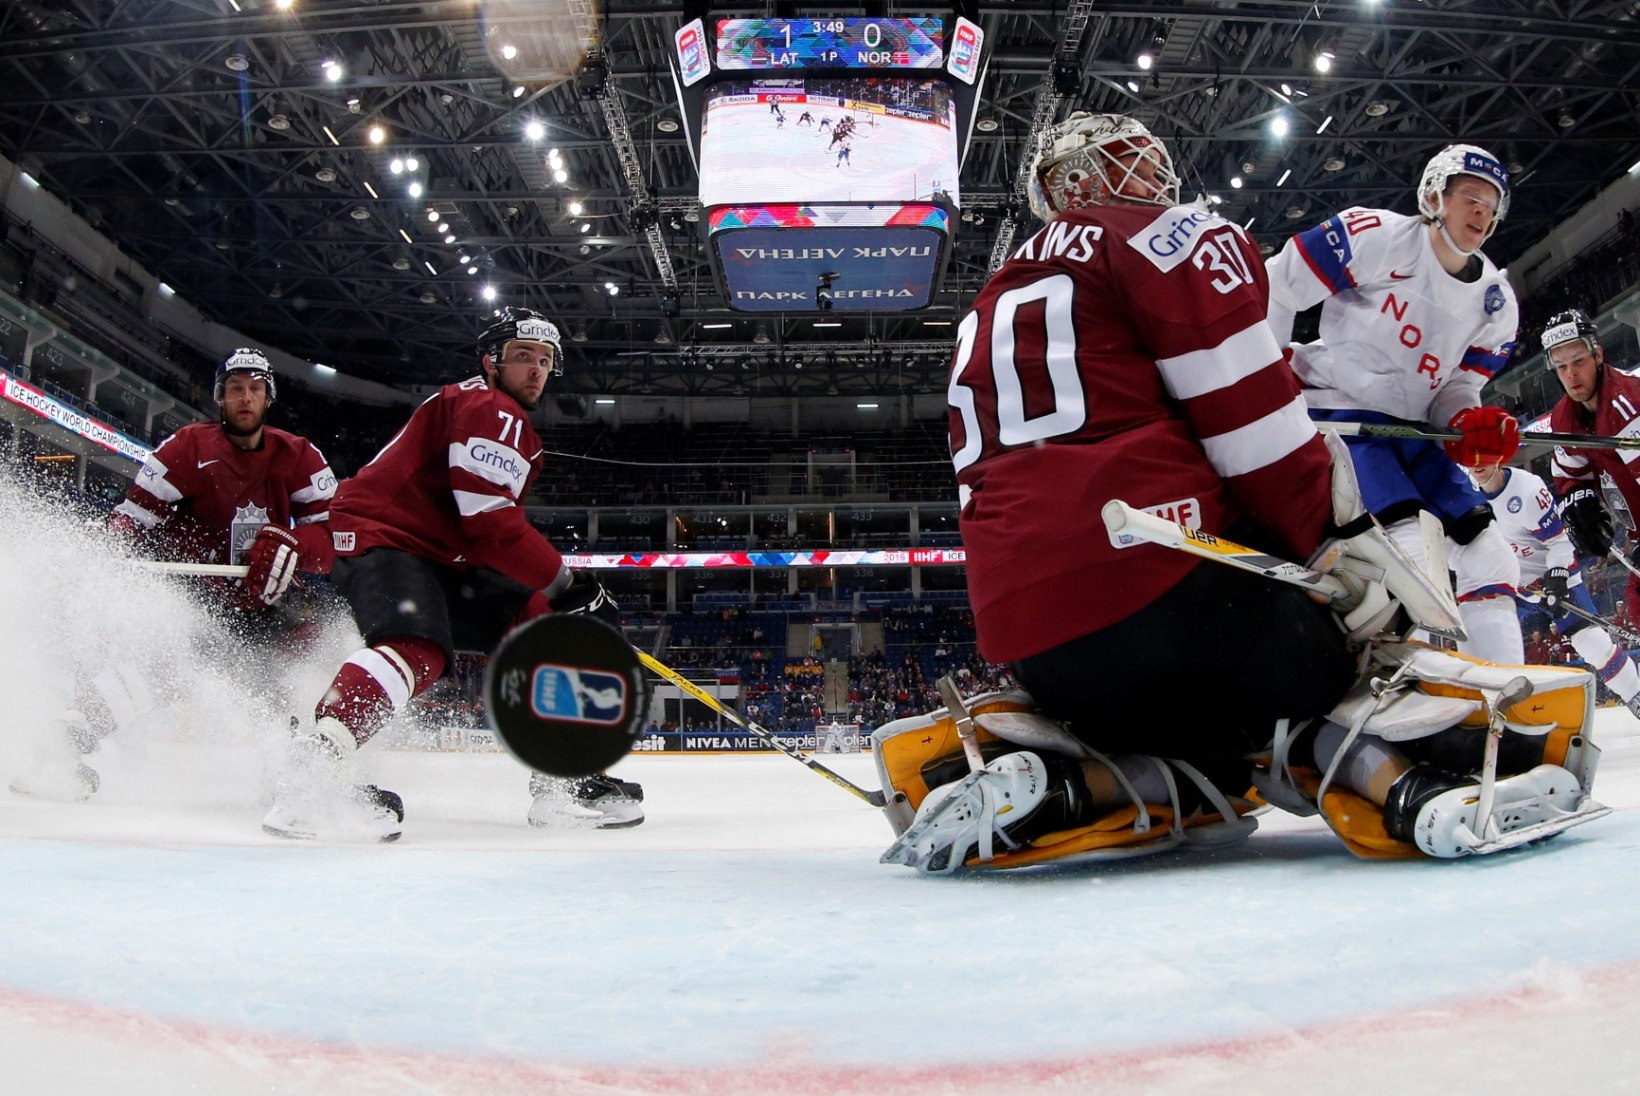 Läti võitles südilt, kuid jäi esimesena olümpiamängude hokiturniiri ukse taha